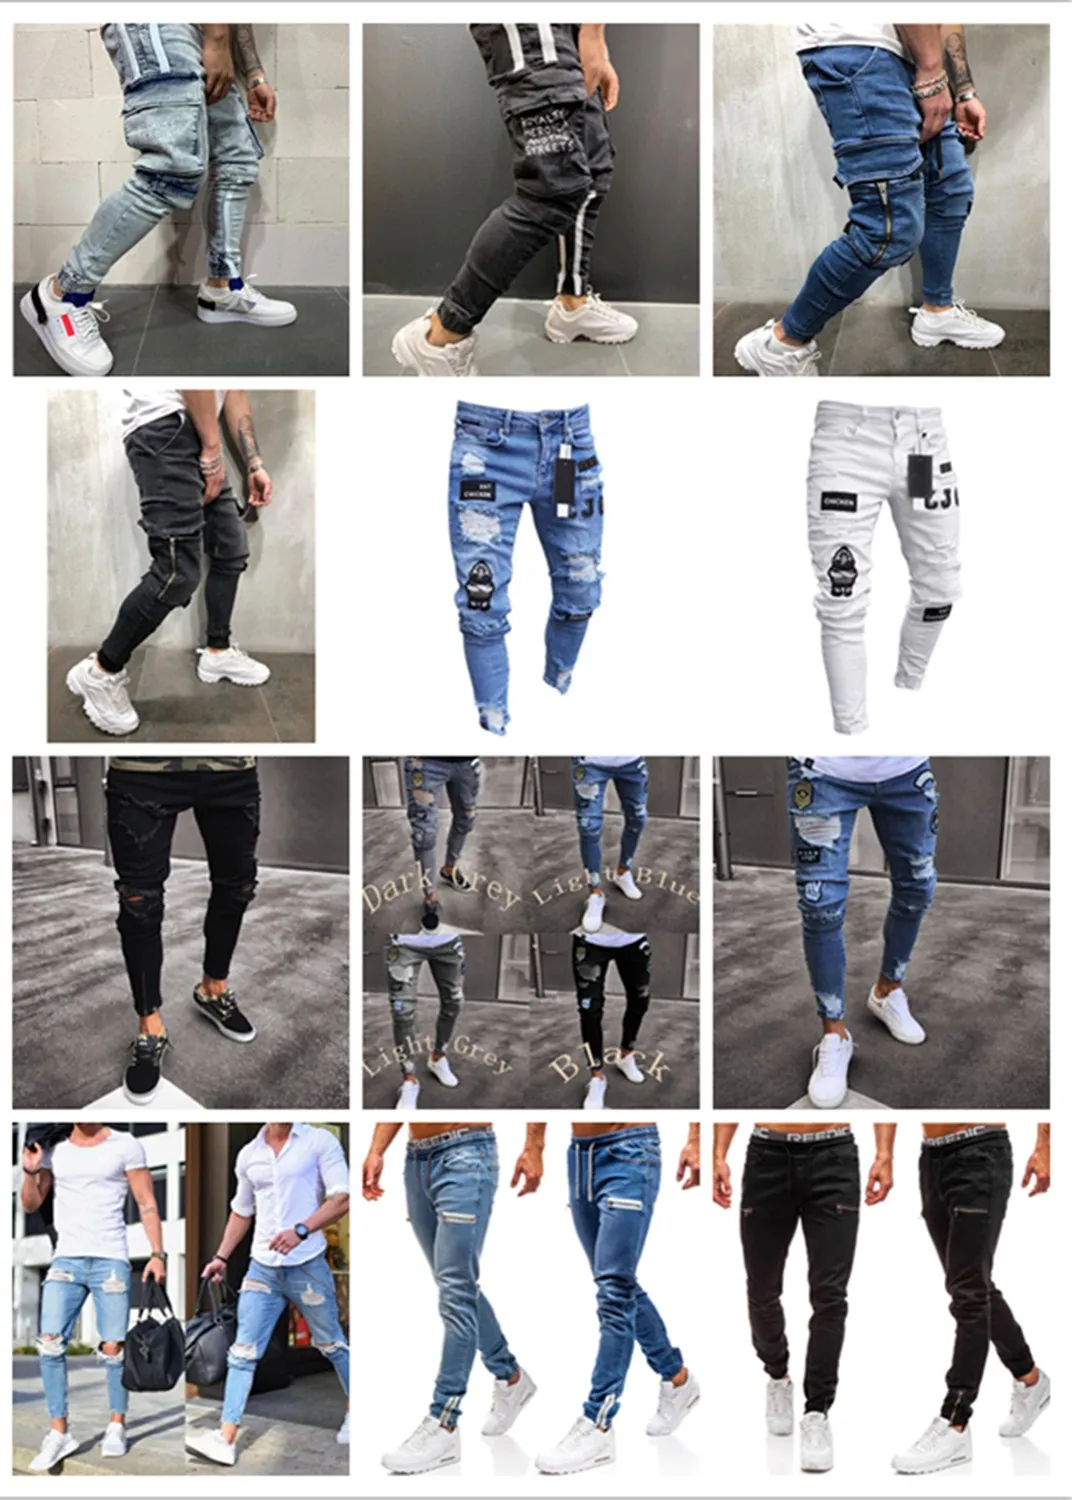 Мужские джинсы-шаровары с эффектом потертости, блестящие джинсовые черные штаны, спортивная одежда в стиле хип-хоп, штаны для бега с эластичной резинкой на талии, джинсы с полосками по бокам